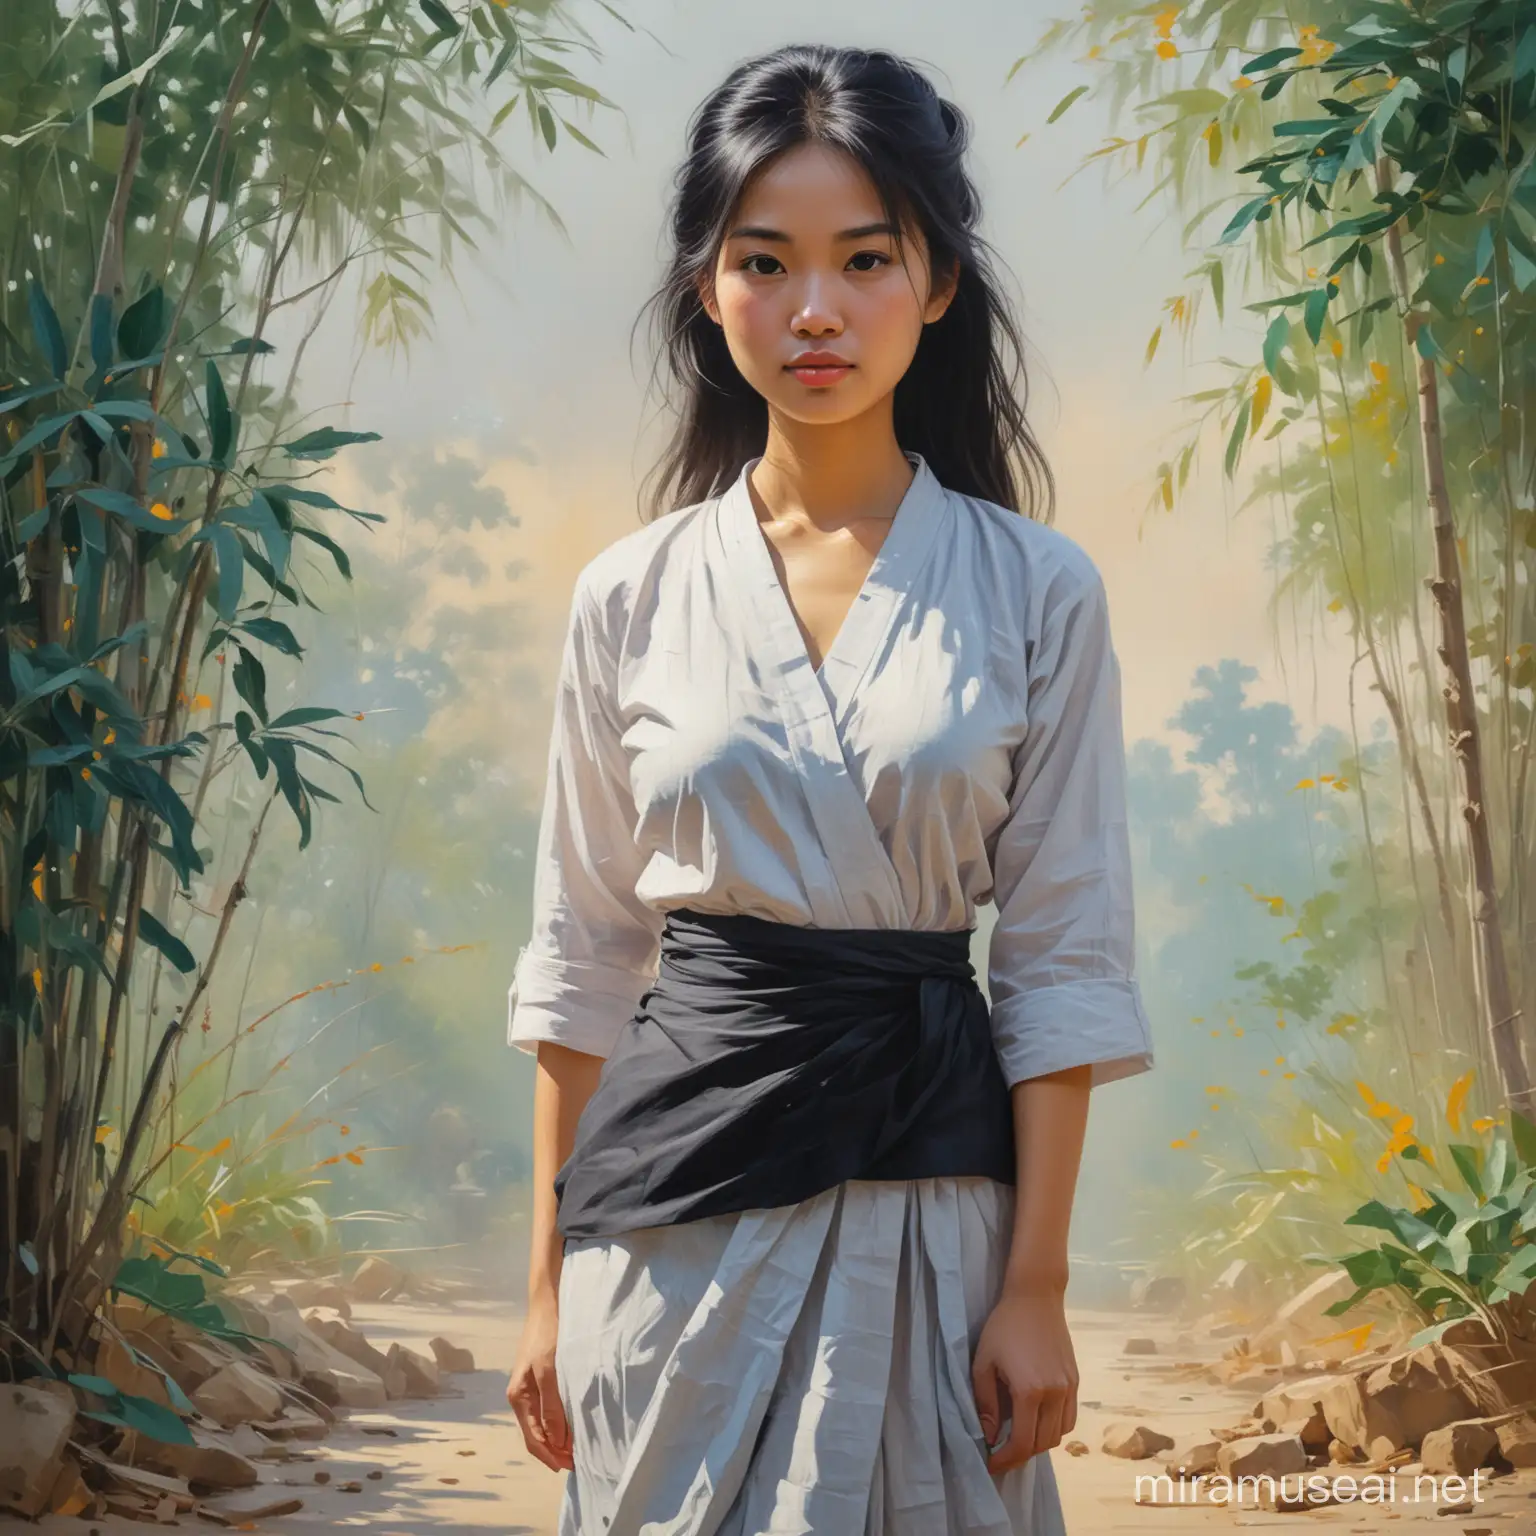 Peinture impressionniste jeune femme vietnamienne avec de large hanche petite en taille et les cheveux noirs détachés